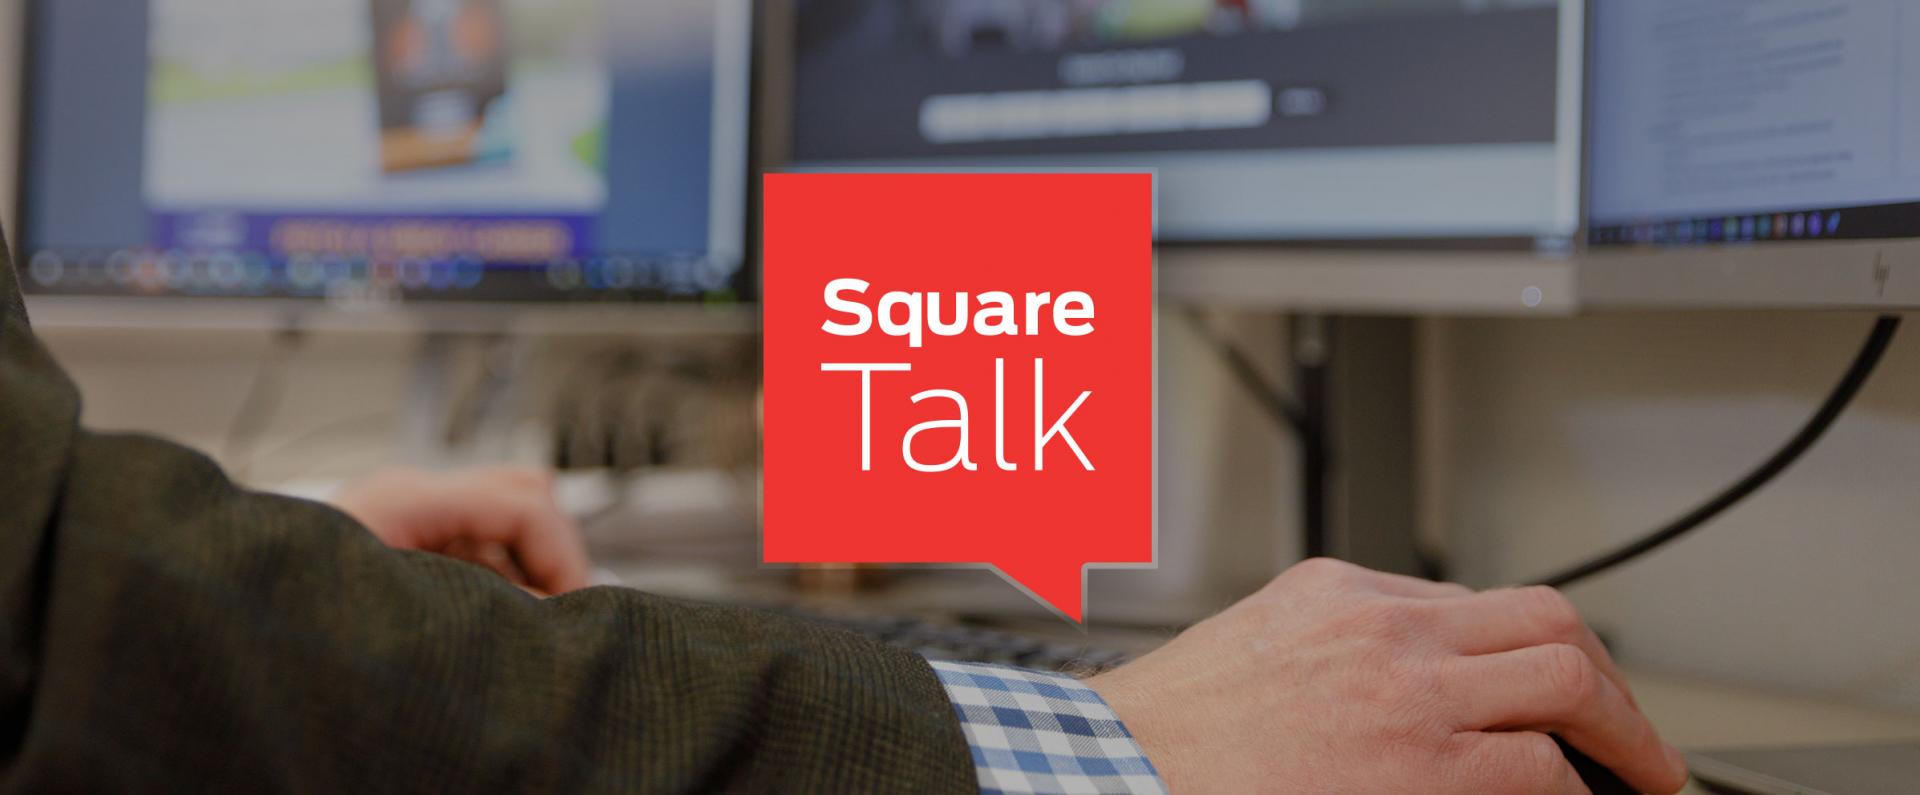 Square Talk icon